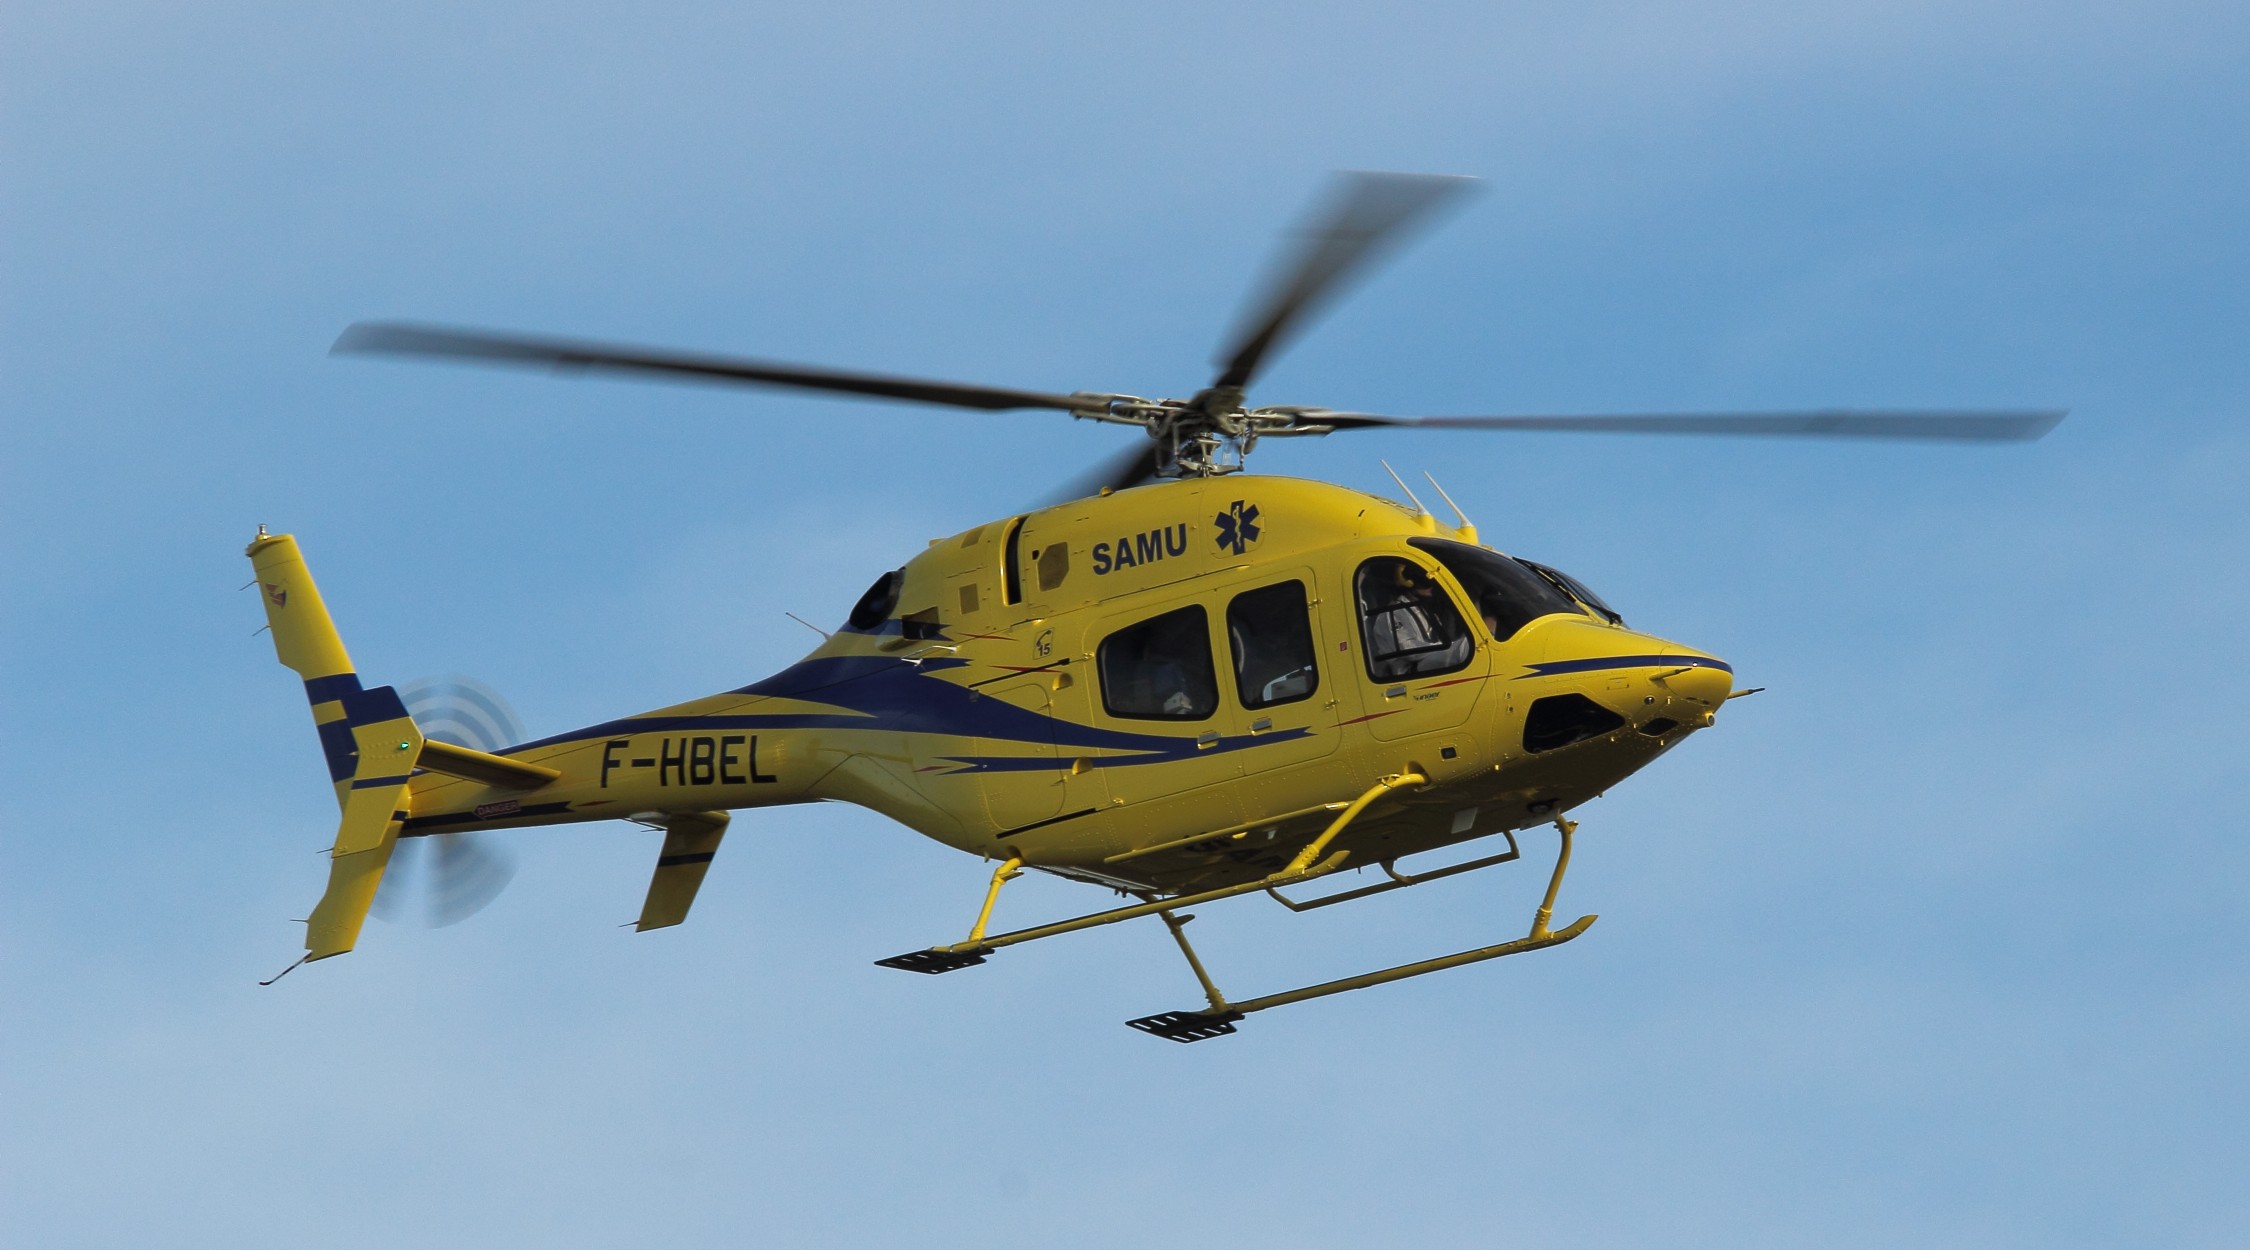 [20/12/2015] Bell429 (F-HBEL) Inaer helicopter: Un p'tit nouveau au SAMU44 !!! 16012507464419033613924669